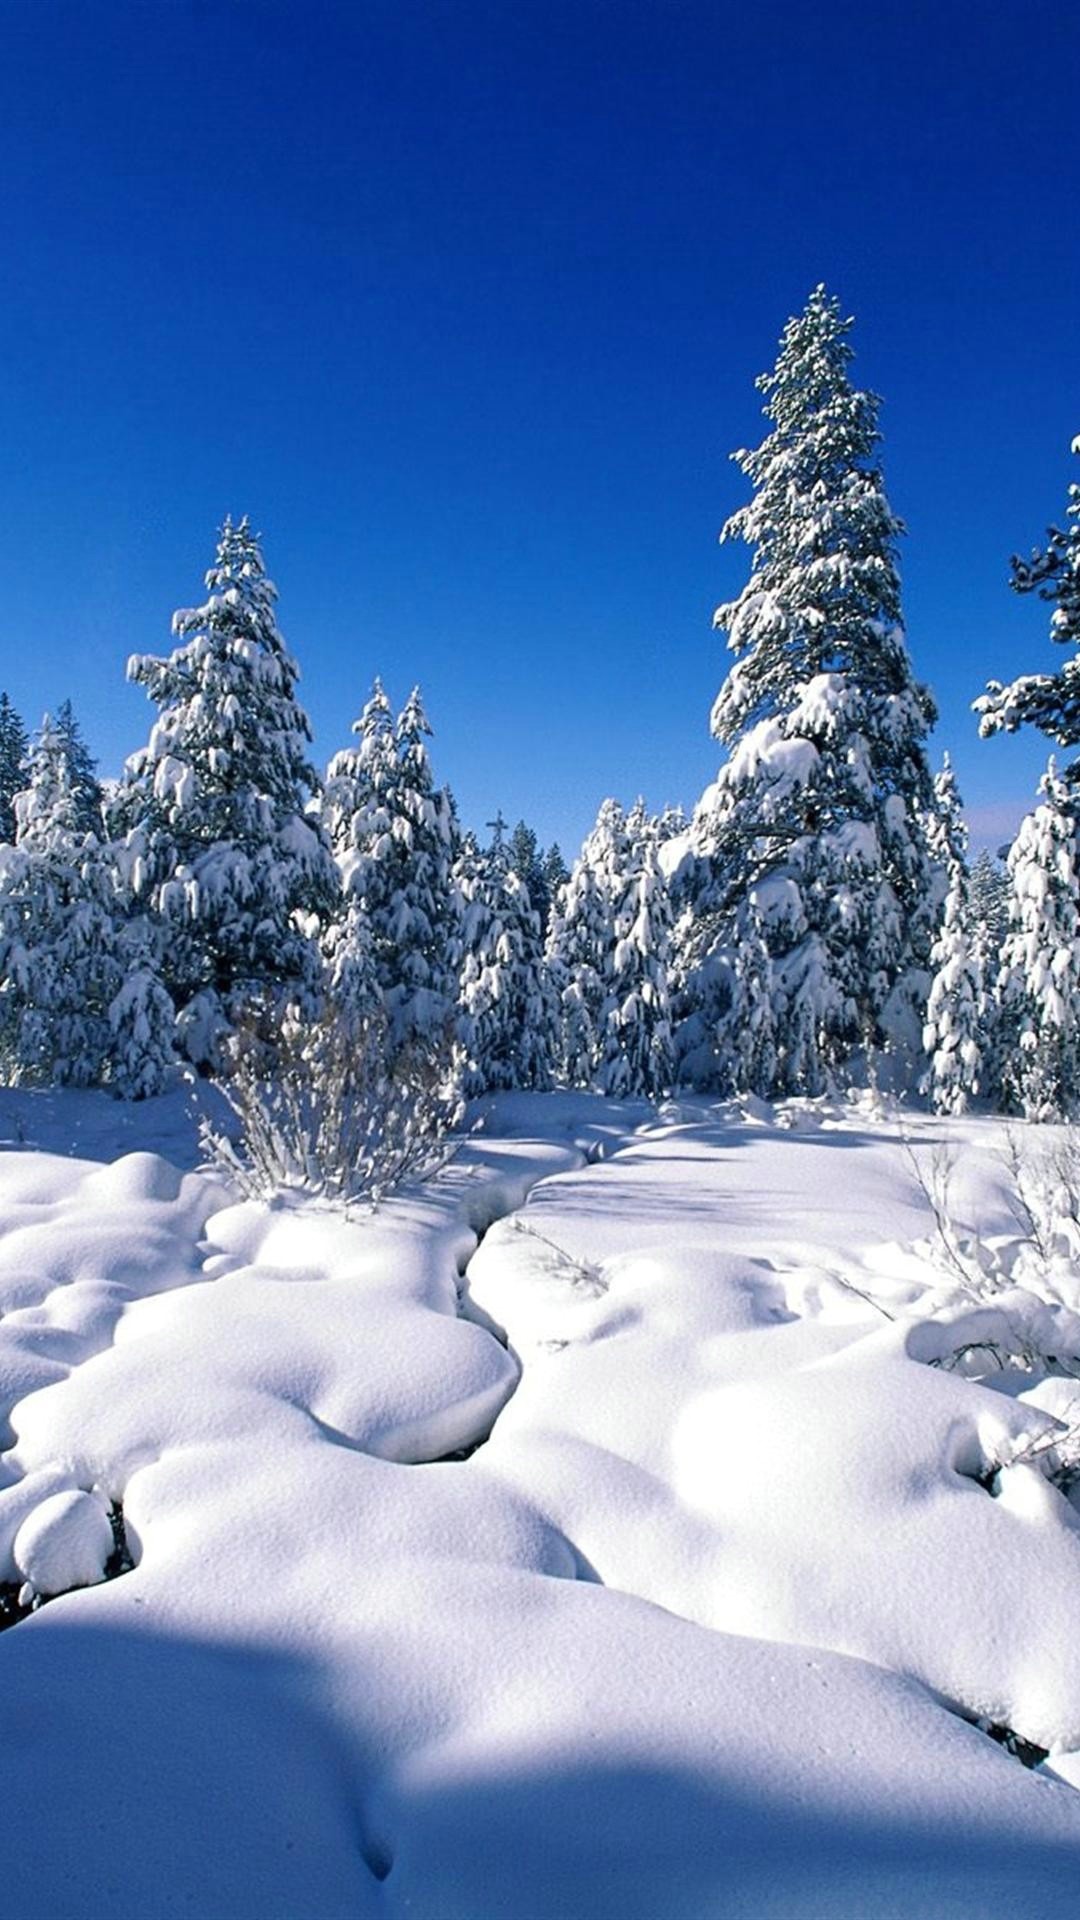 papel pintado temático de invierno,nieve,invierno,árbol,naturaleza,paisaje natural